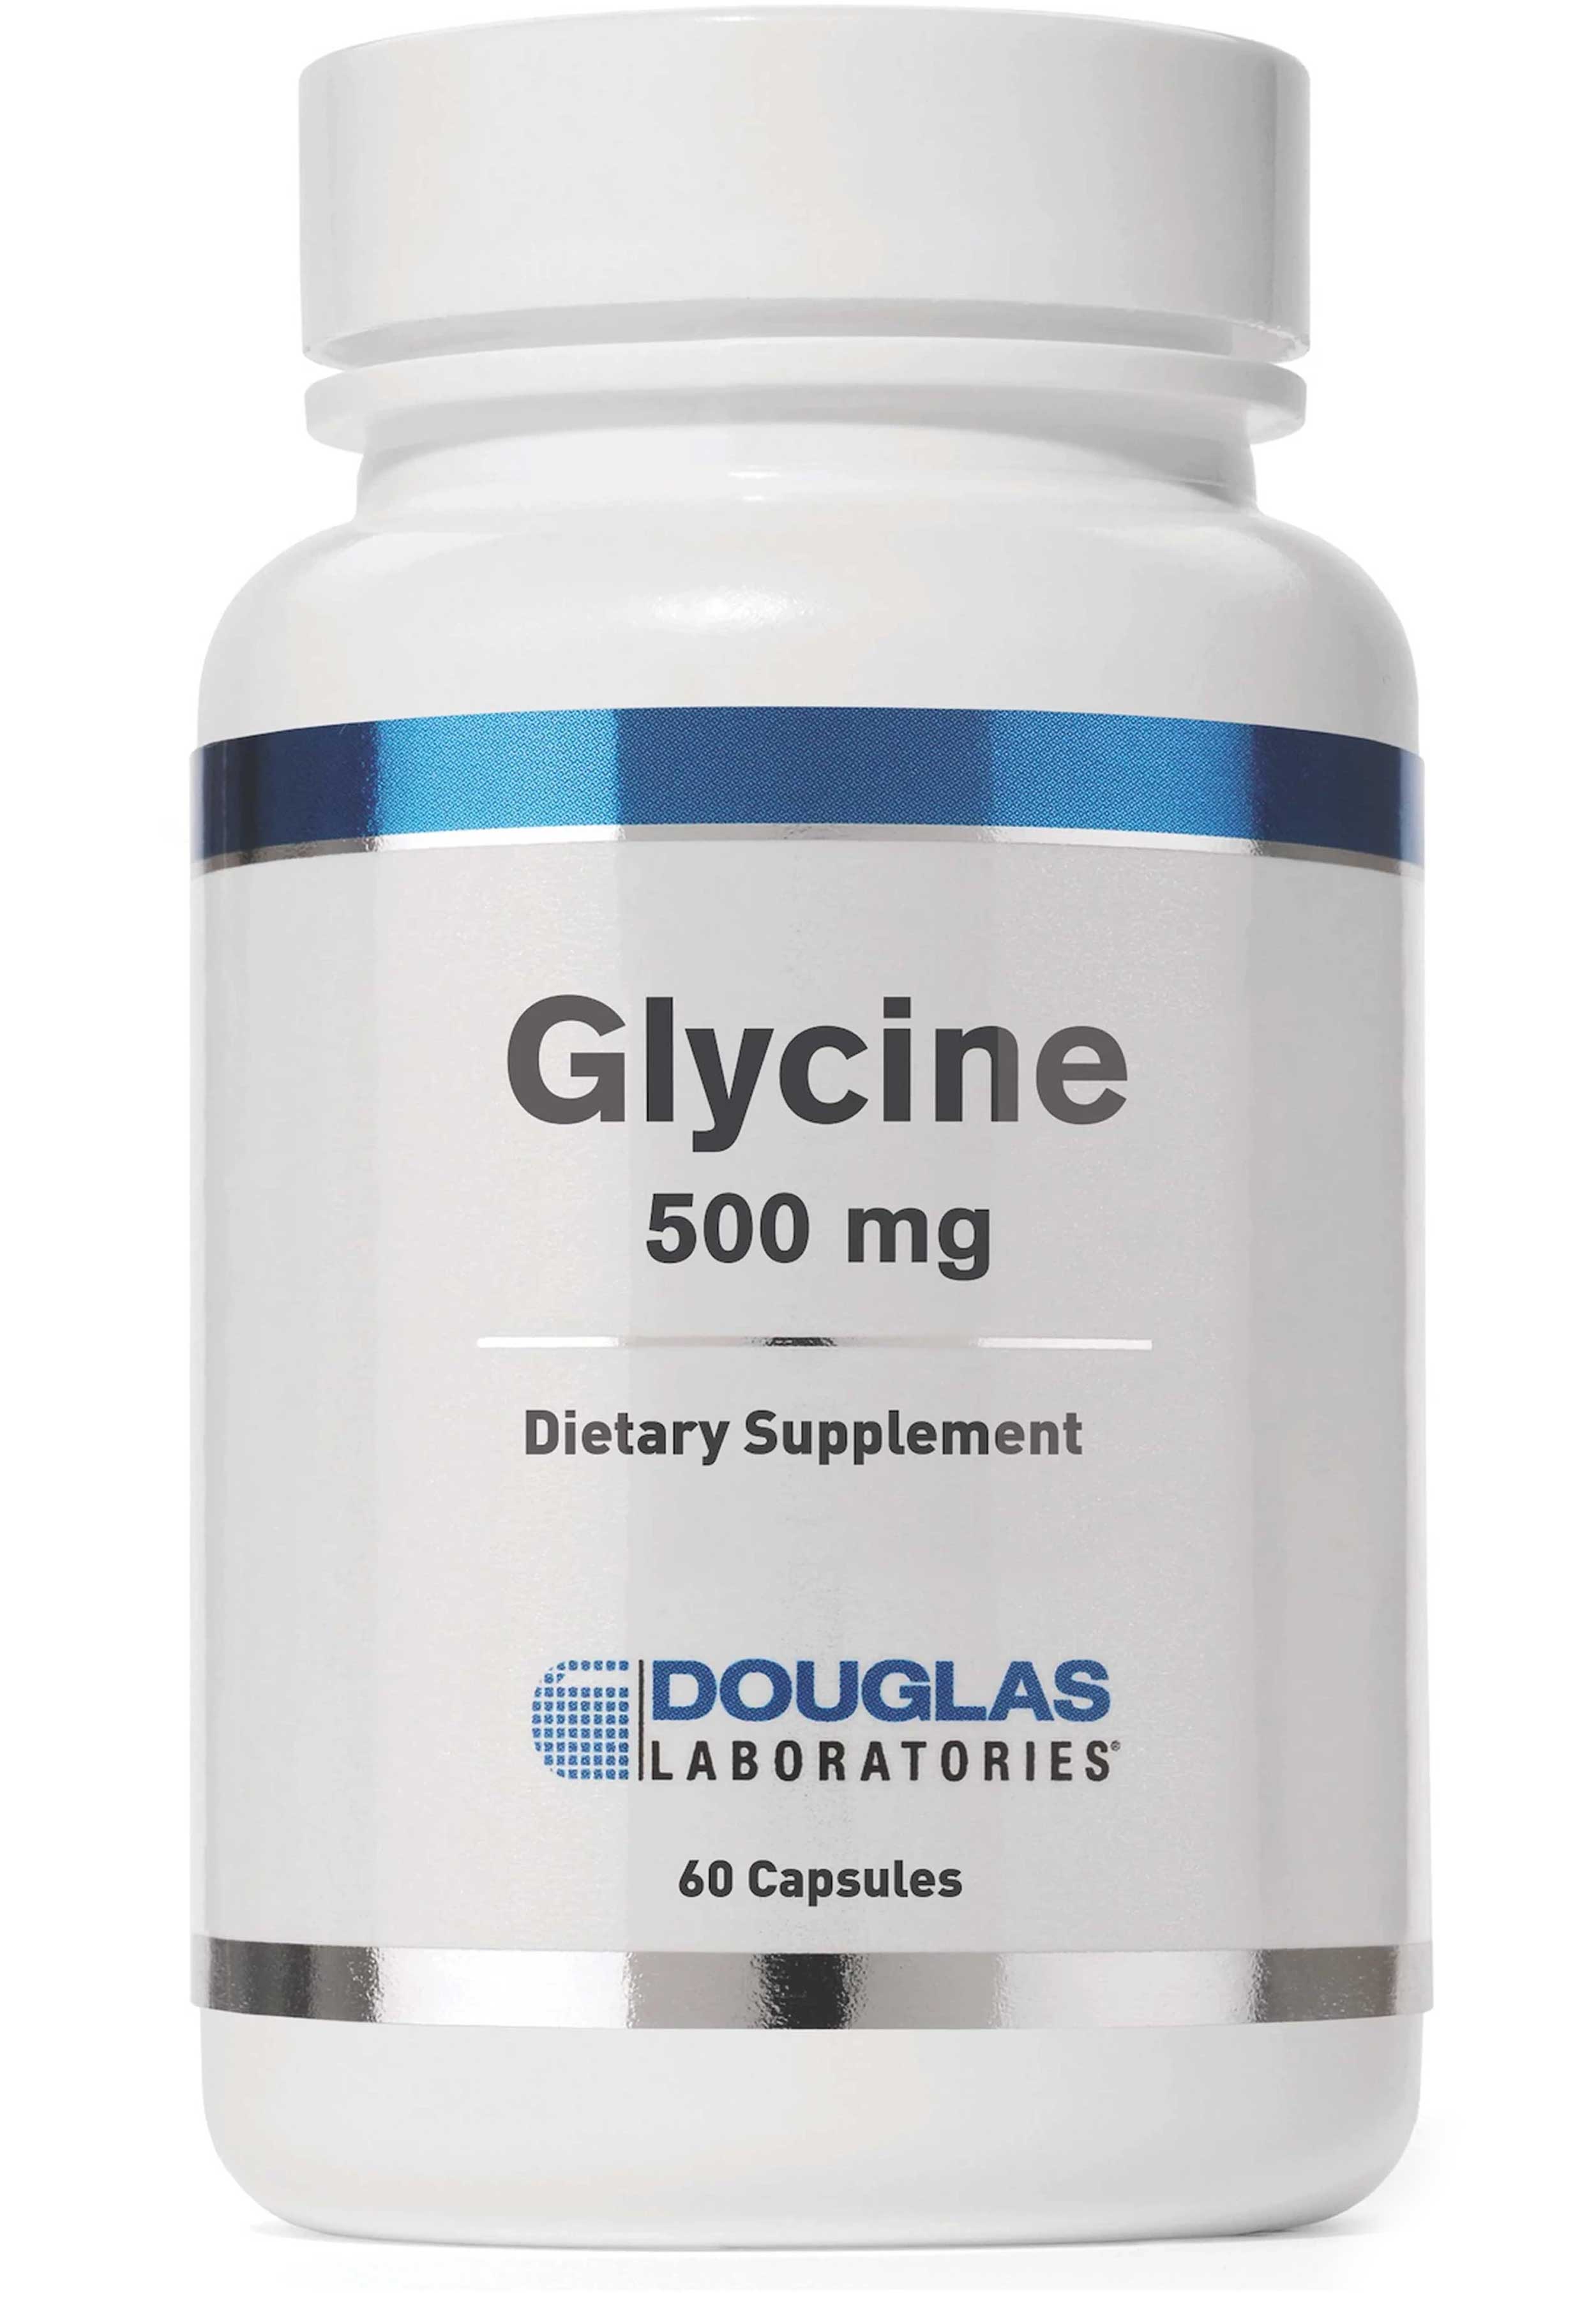 Douglas Laboratories Glycine 500 mg